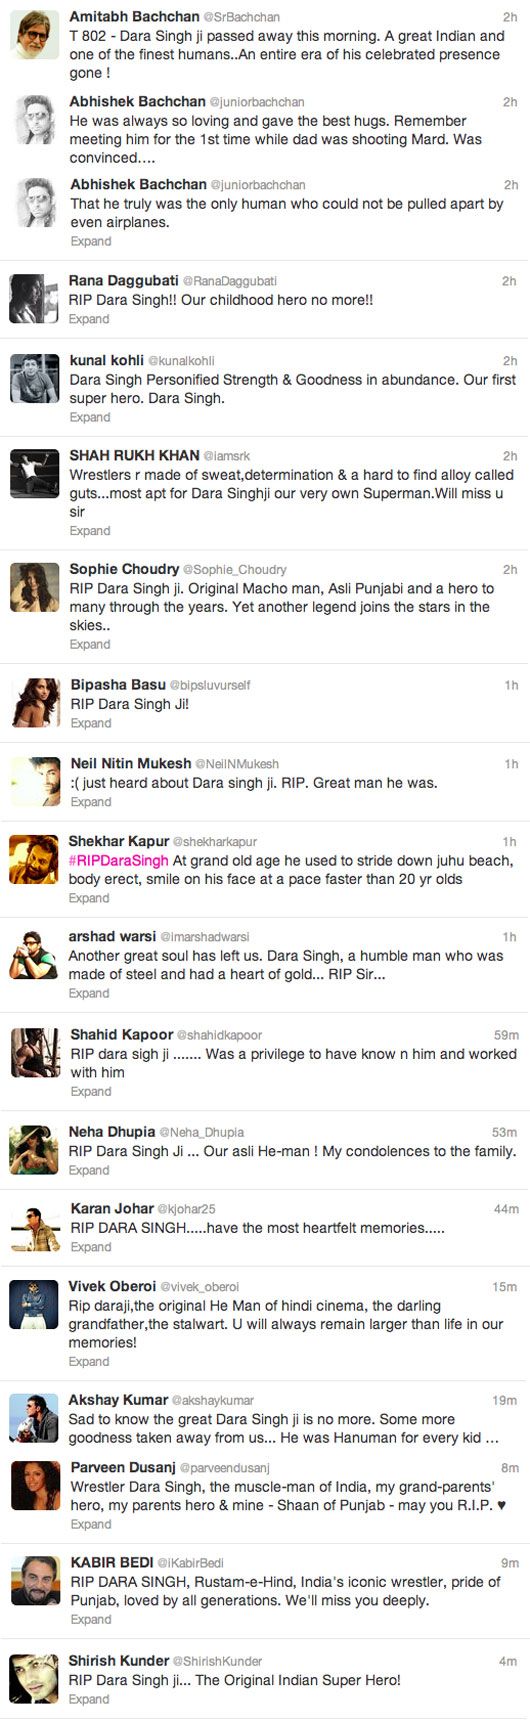 Bollywood remembers Dara Singh